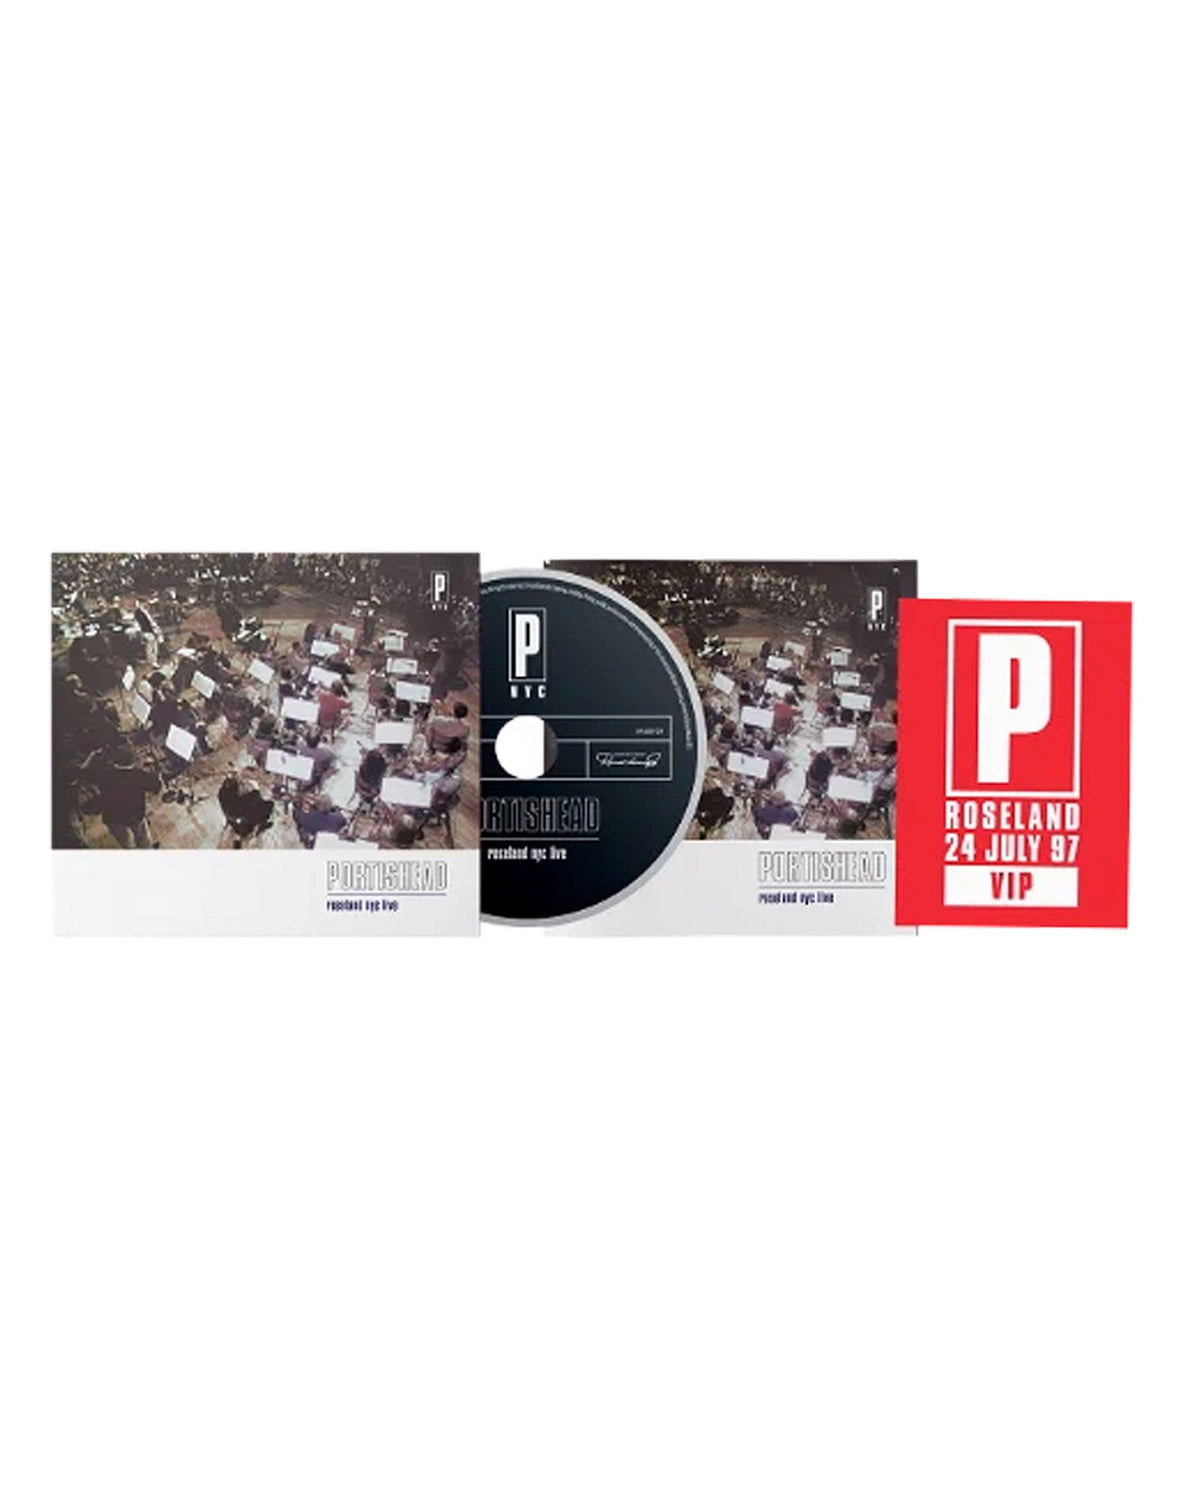 Portishead - CD "Roseland NYC Live" (Edición limitada 25 aniversario) - D2fy · Rocktud - Rocktud